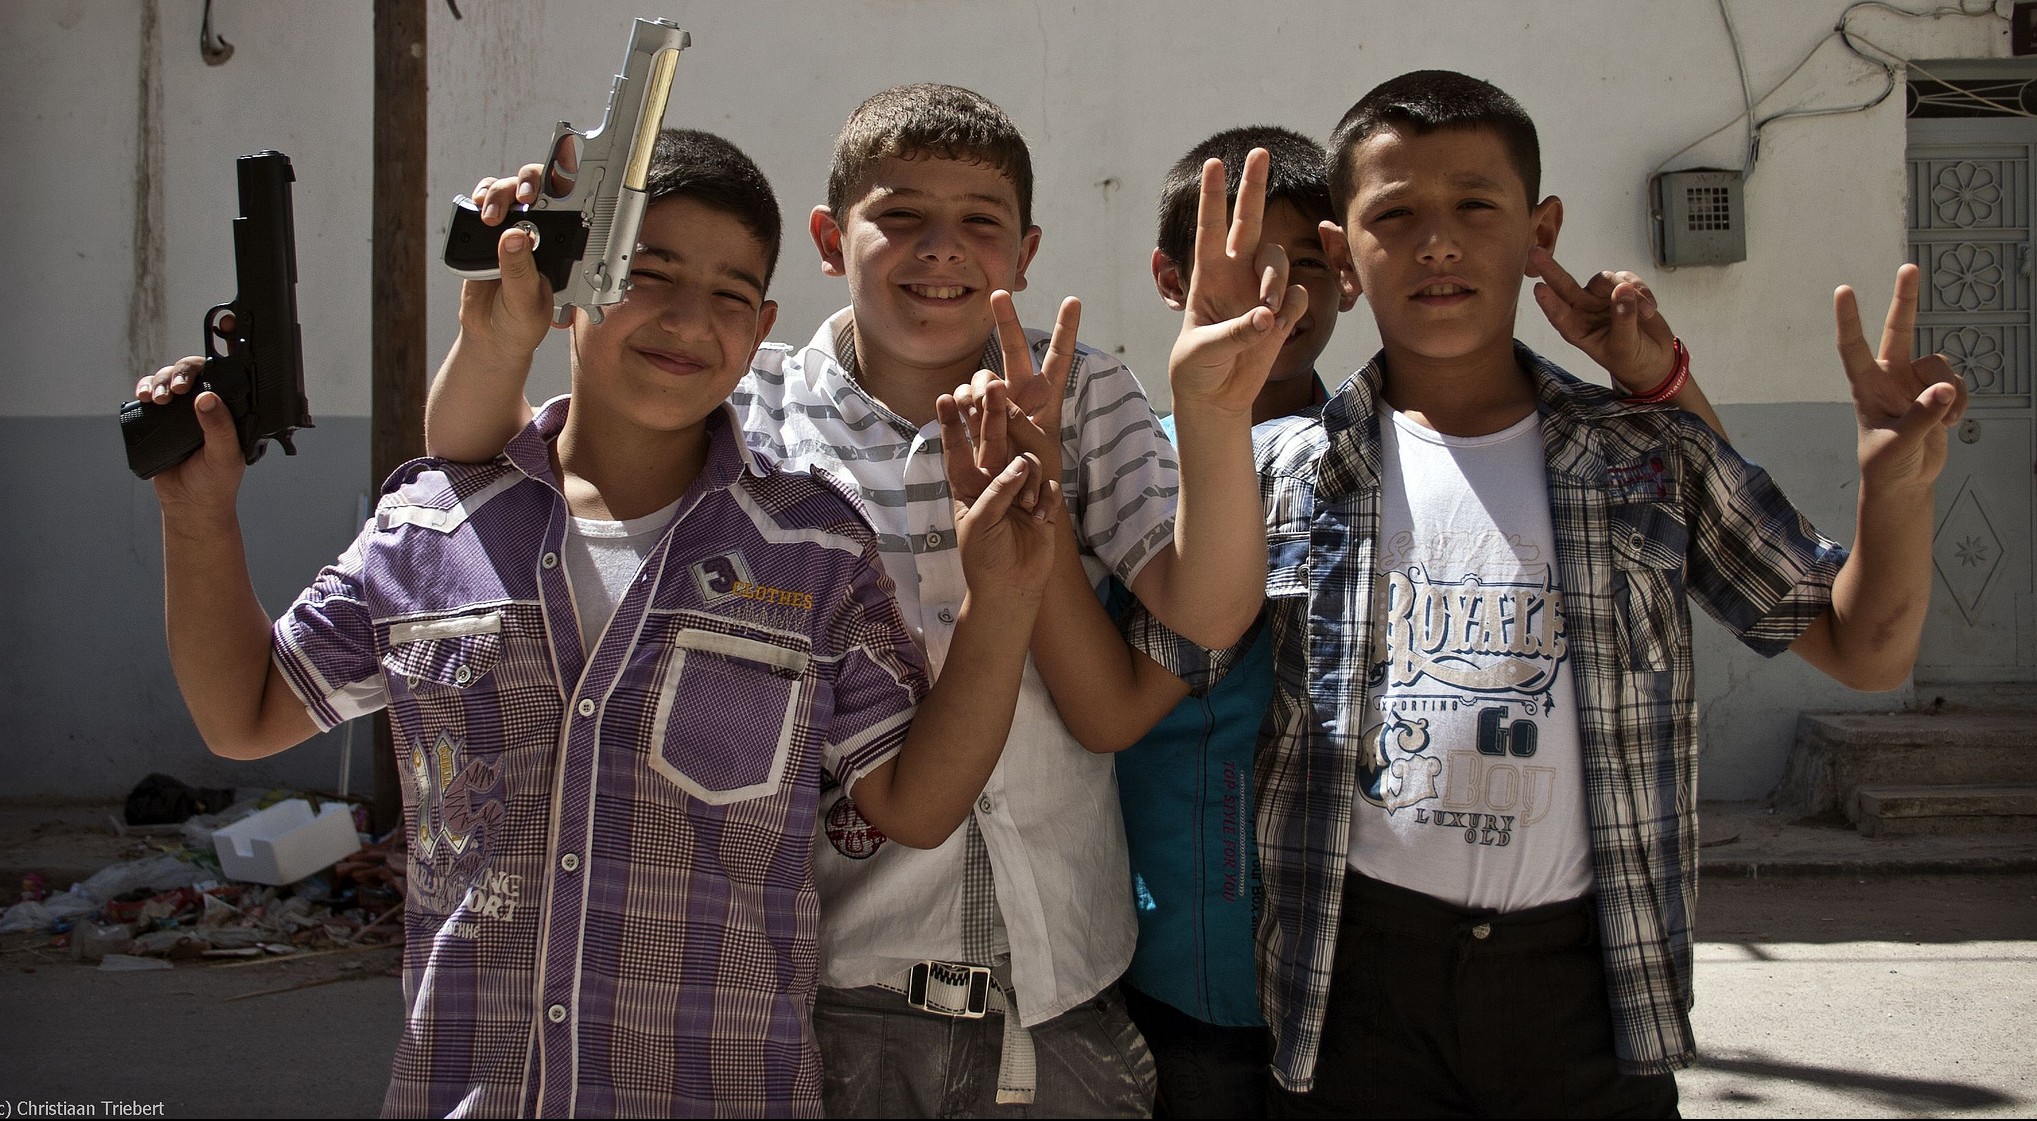 Der Krieg gehörte für Kinder aus Syrien zum Alltag, hier: Jungen in Azaz. Wie gehen sie damit um? Foto: Christiaan Triebert / flickr (CC BY 2.0)